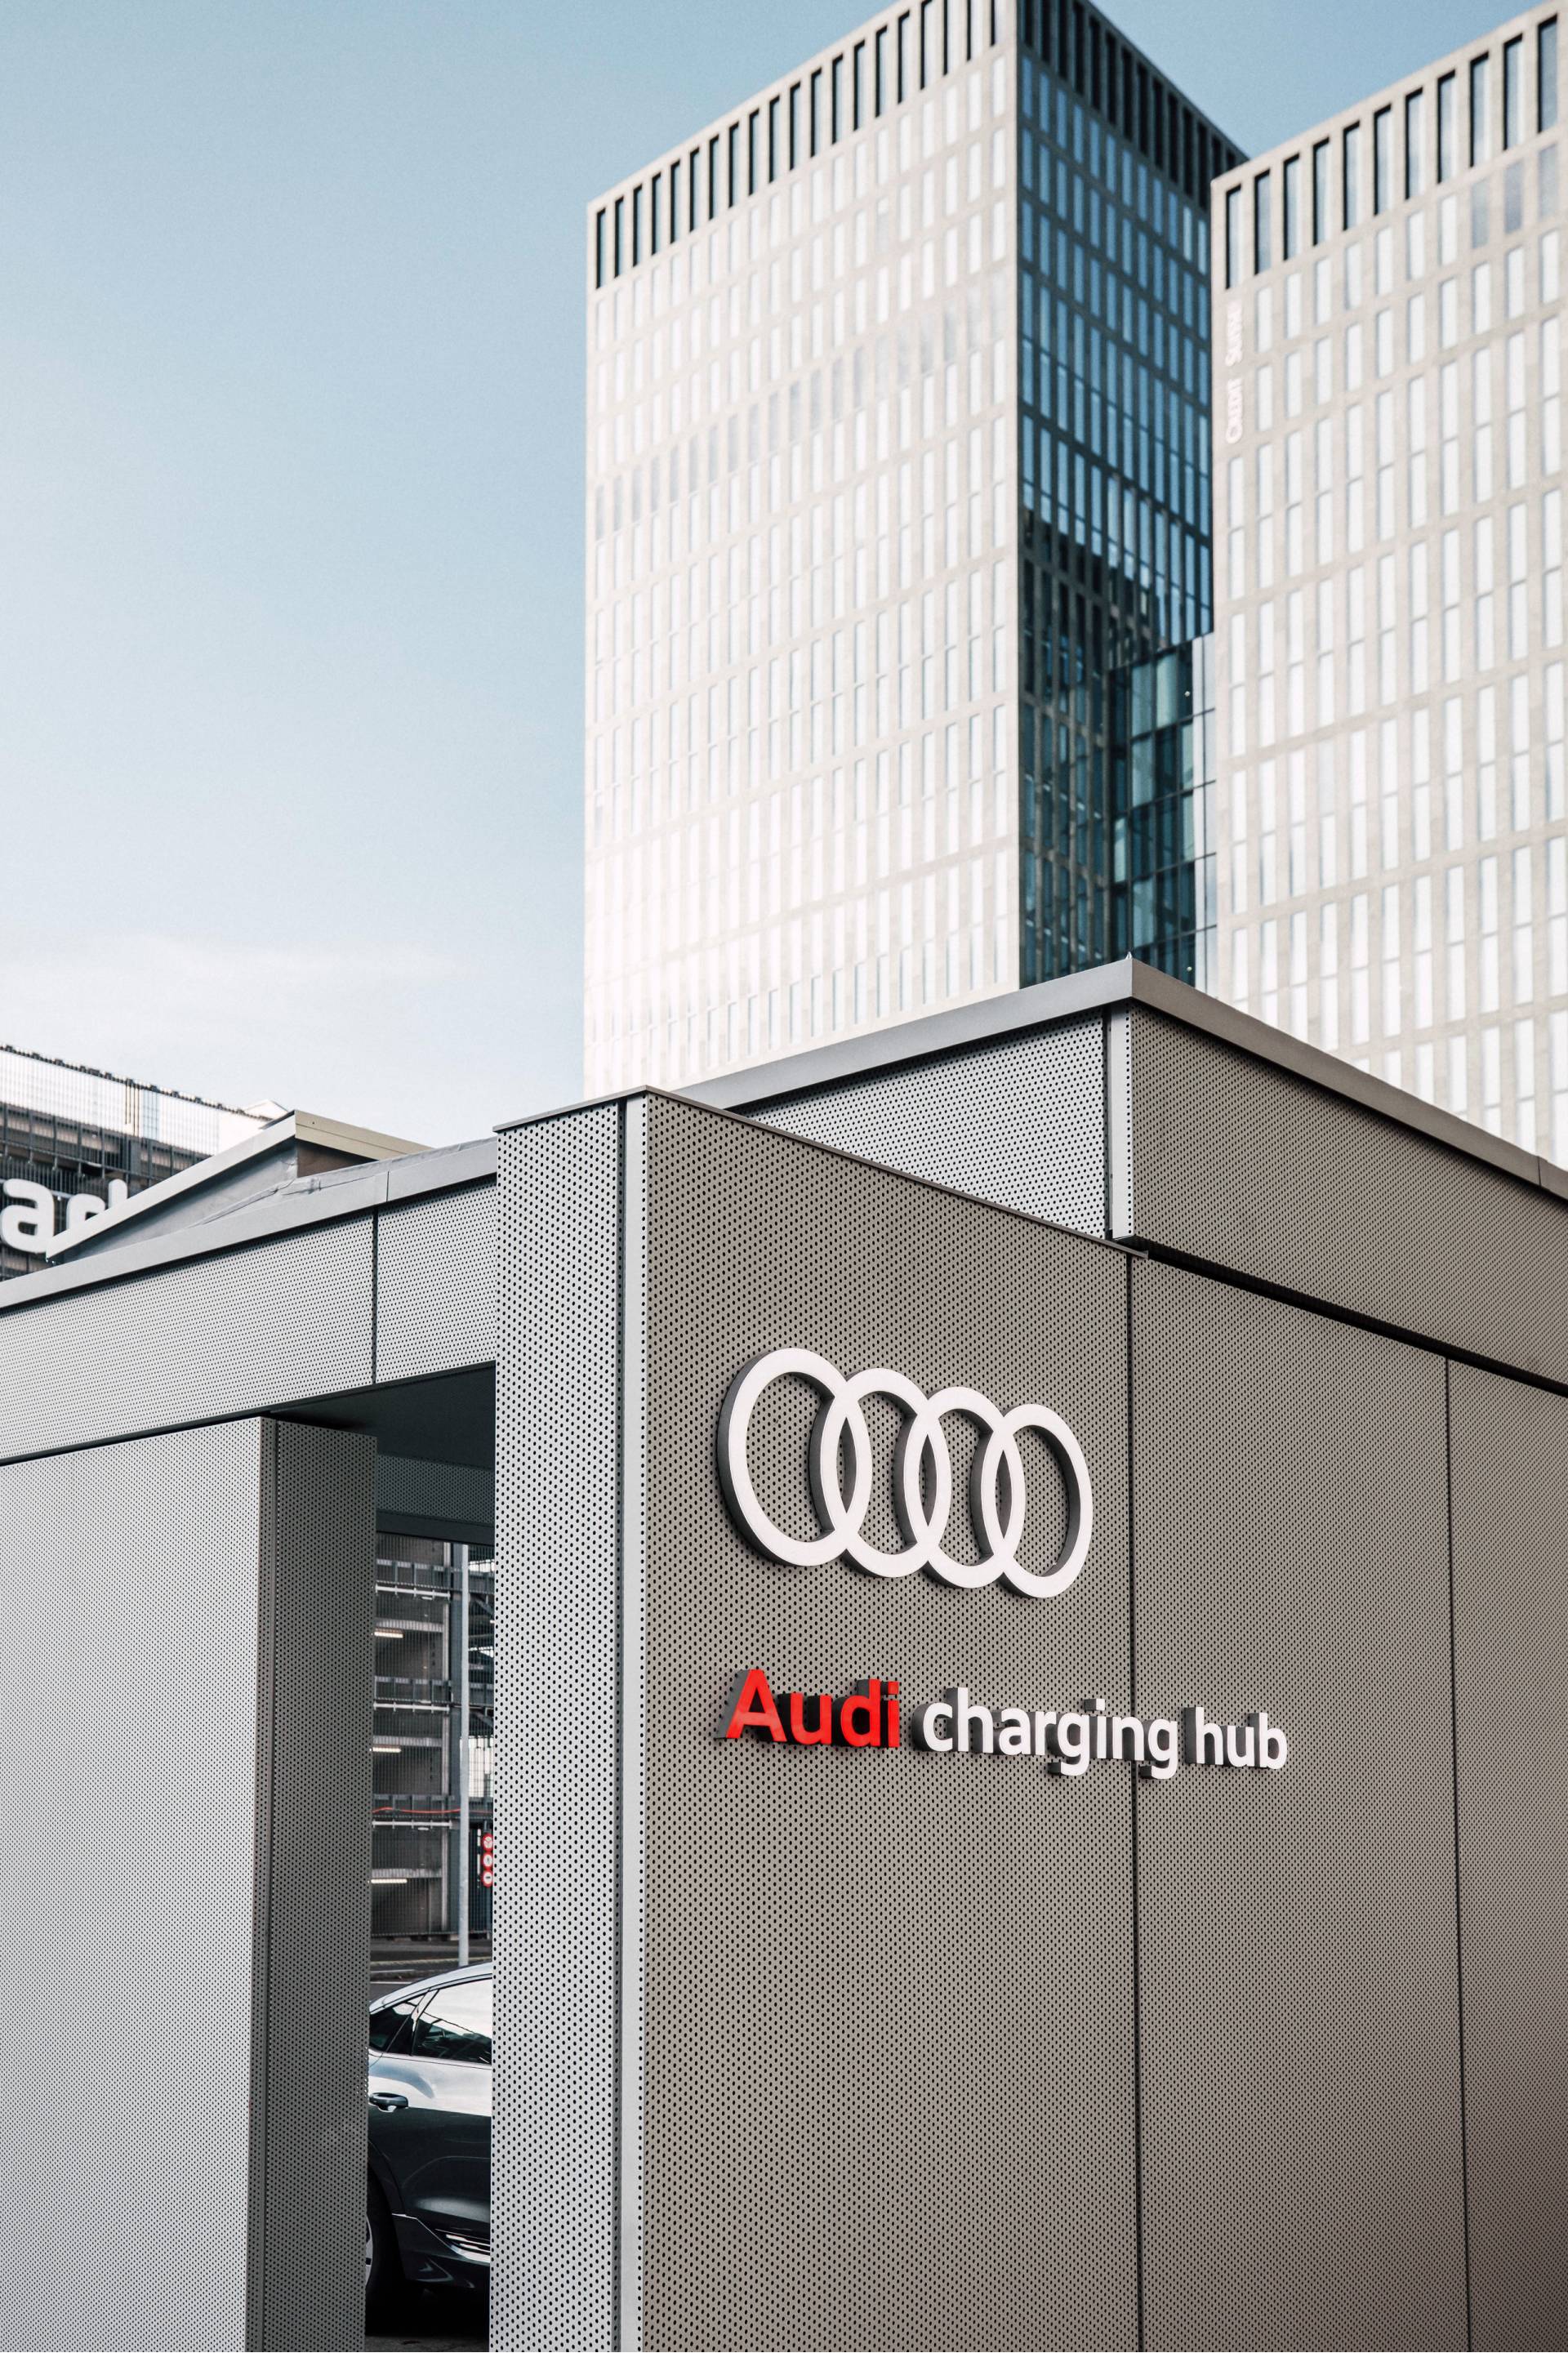 De façade van de Audi charging hub Zürich.